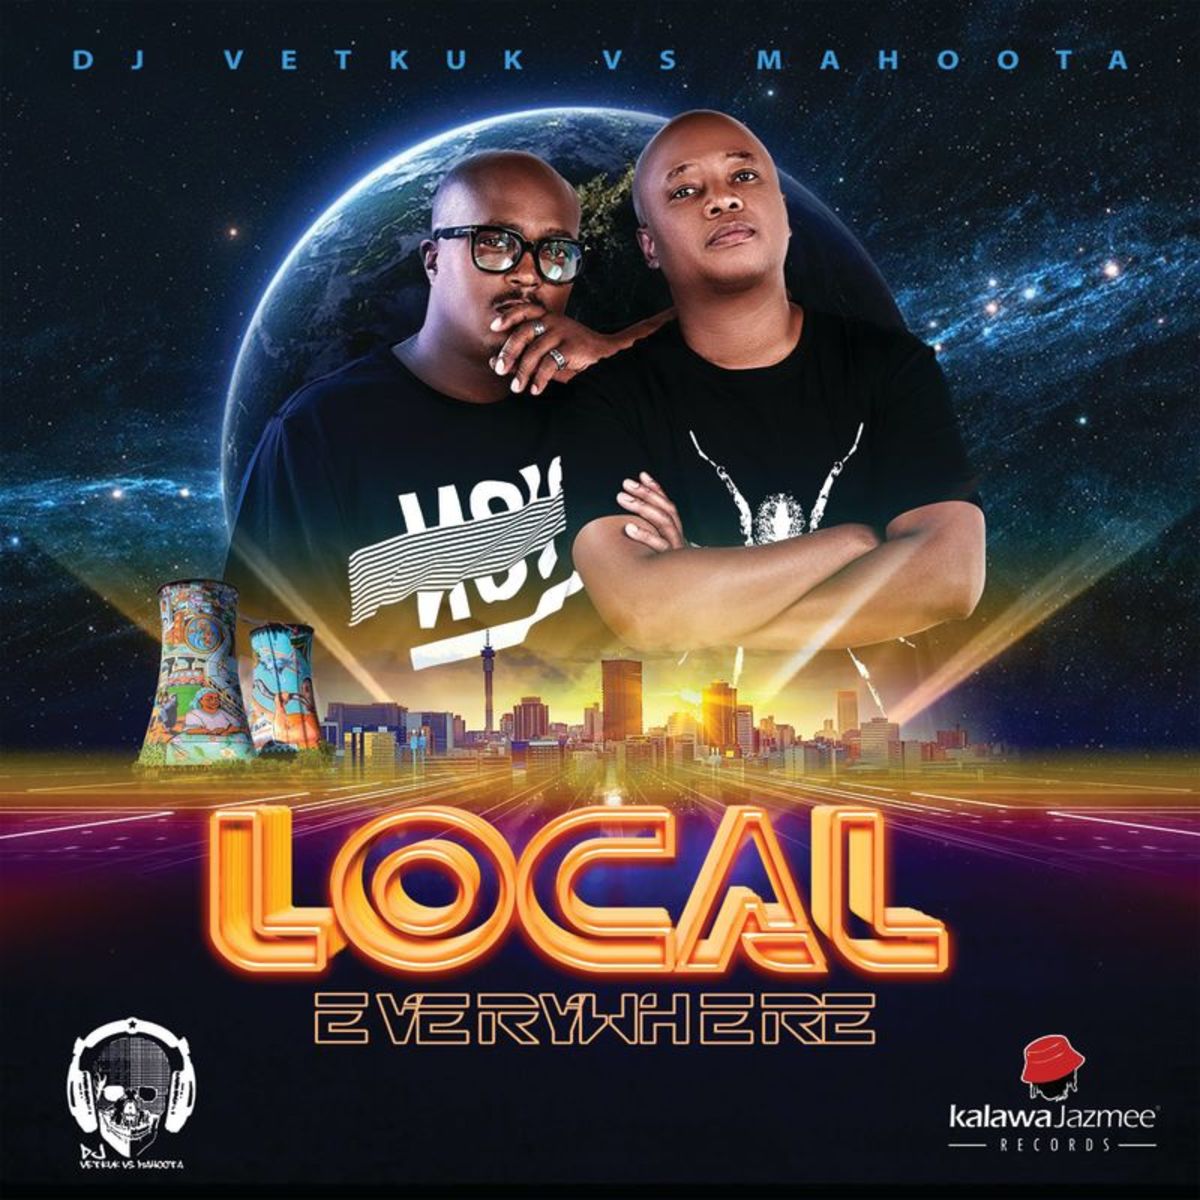 DJ Vetkuk - Local Everywhere (DJ Vetkuk Vs. Mahoota) / Kalawa Jazmee